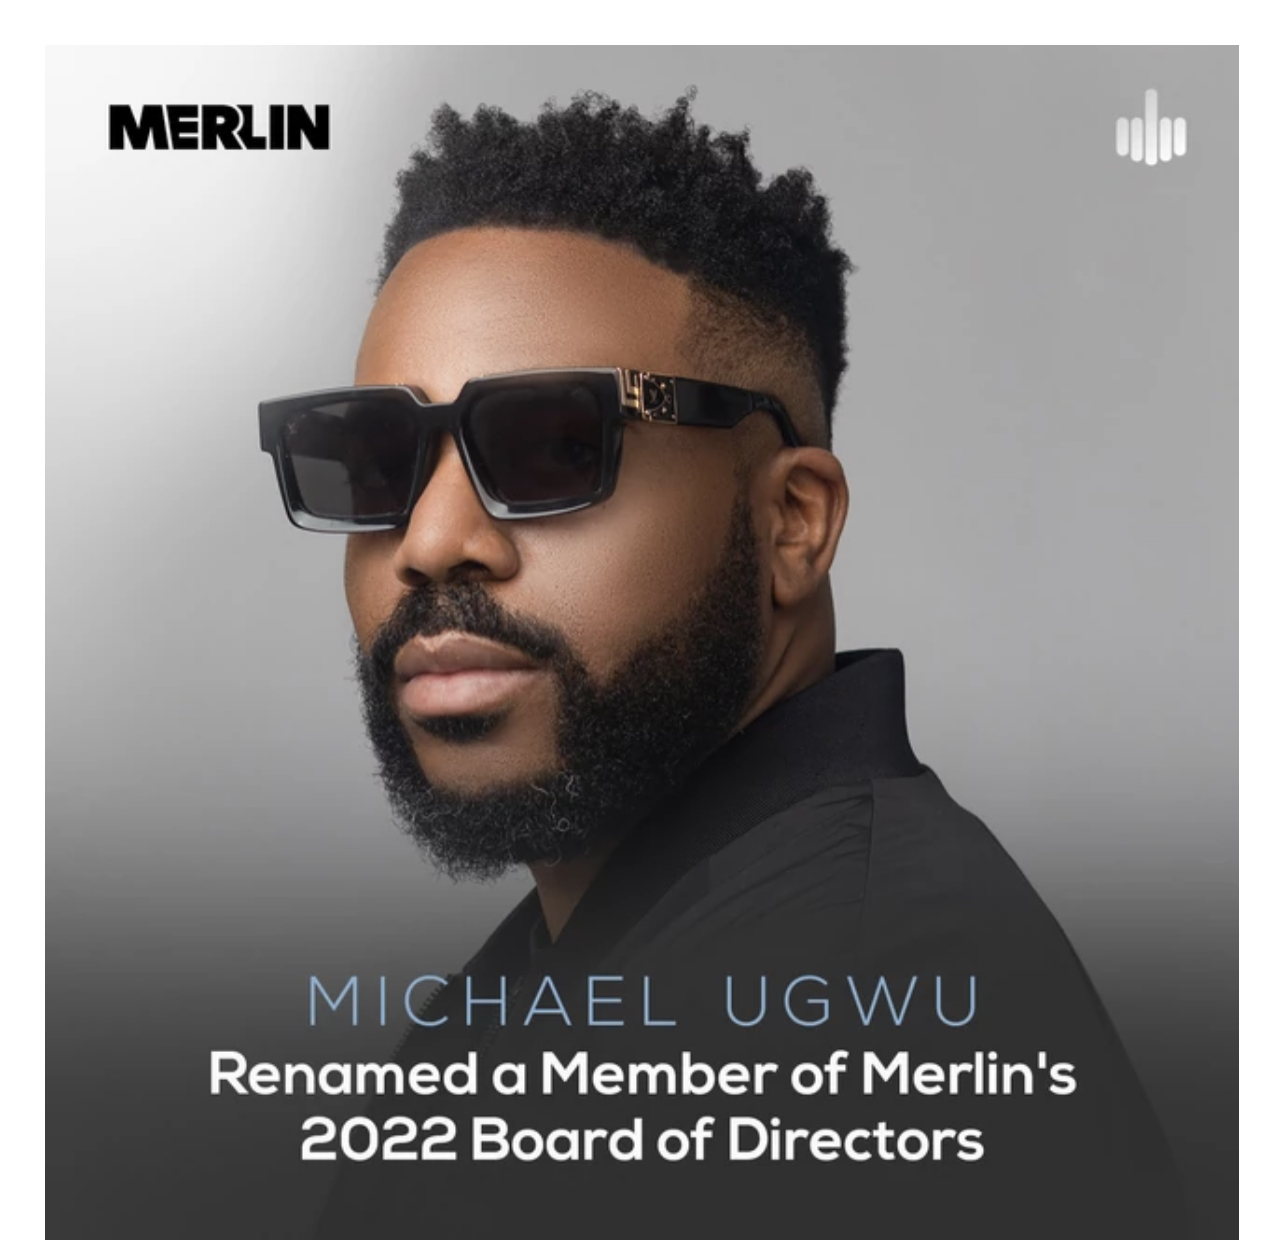 Michael Ugwu renamed as a member of Merlin Board of Directors 2022